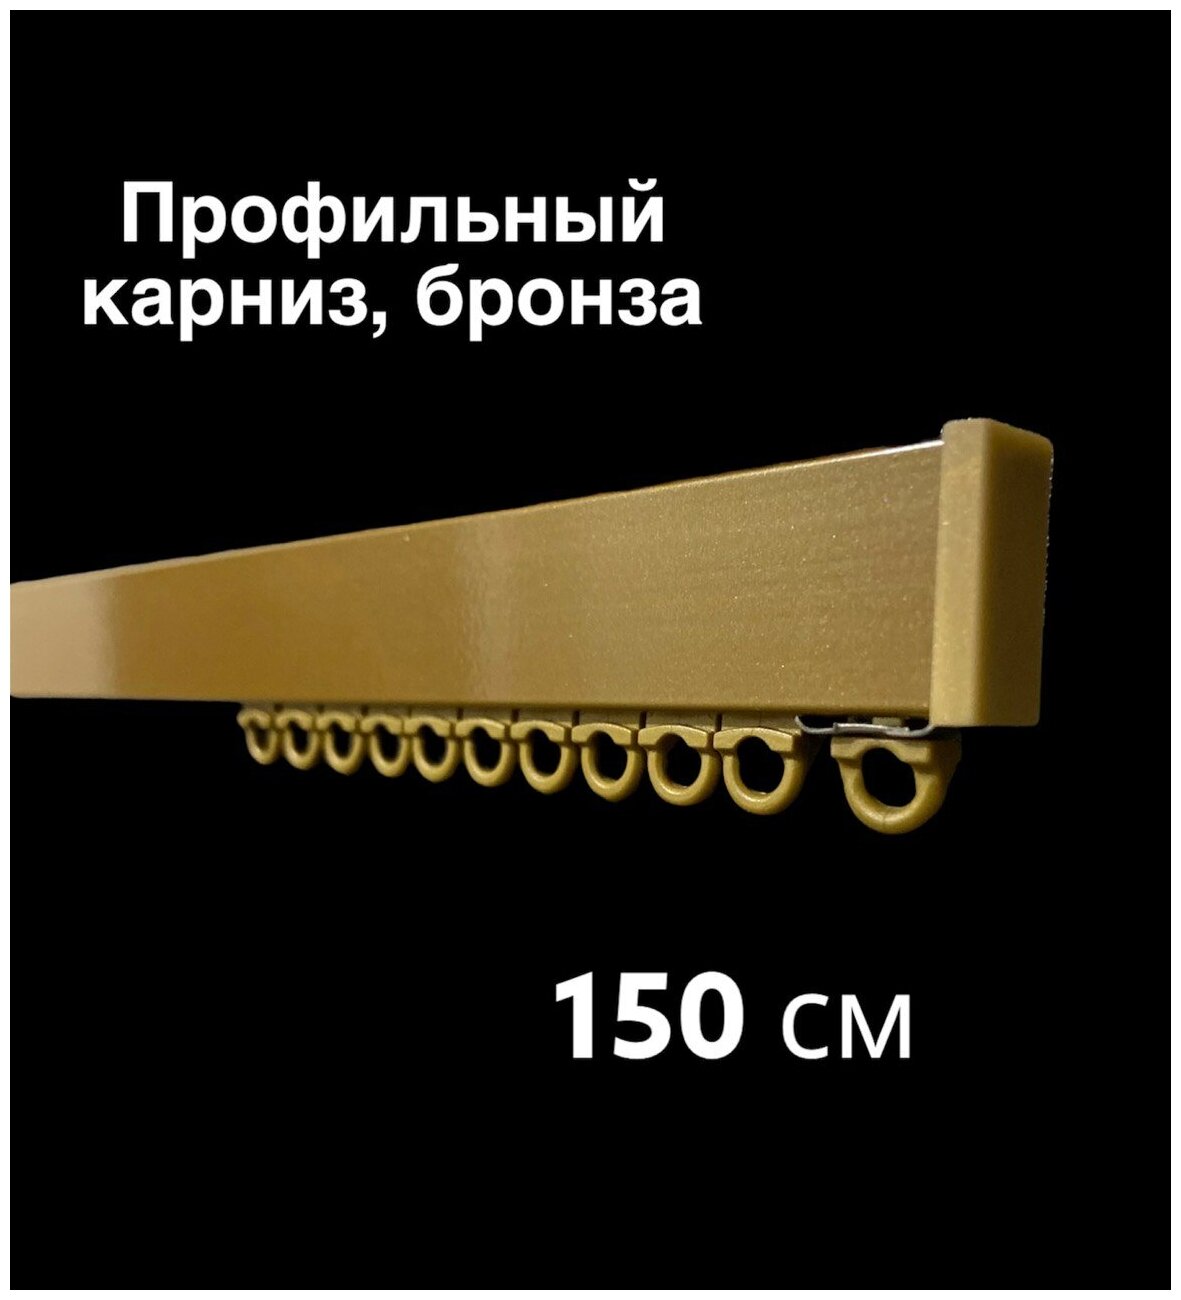 Карниз для штор профильный однорядный/ Ufakarniz/ Карниз 150 см